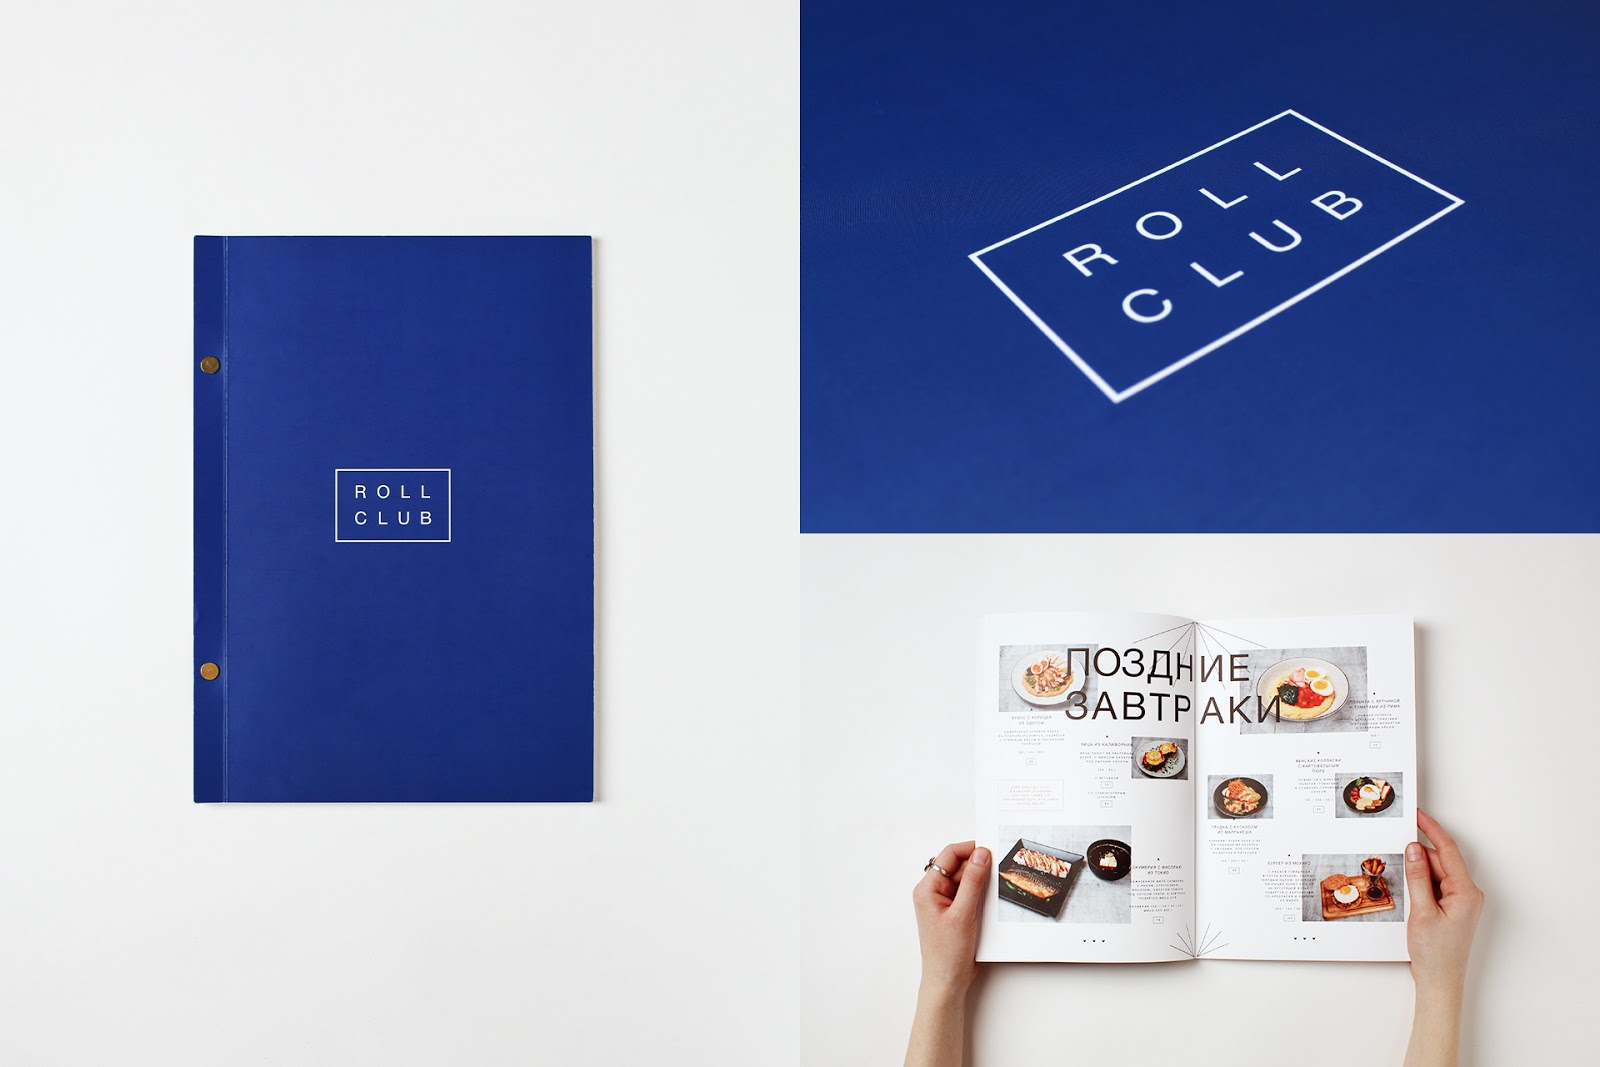 Roll Club餐厅视觉形象设计